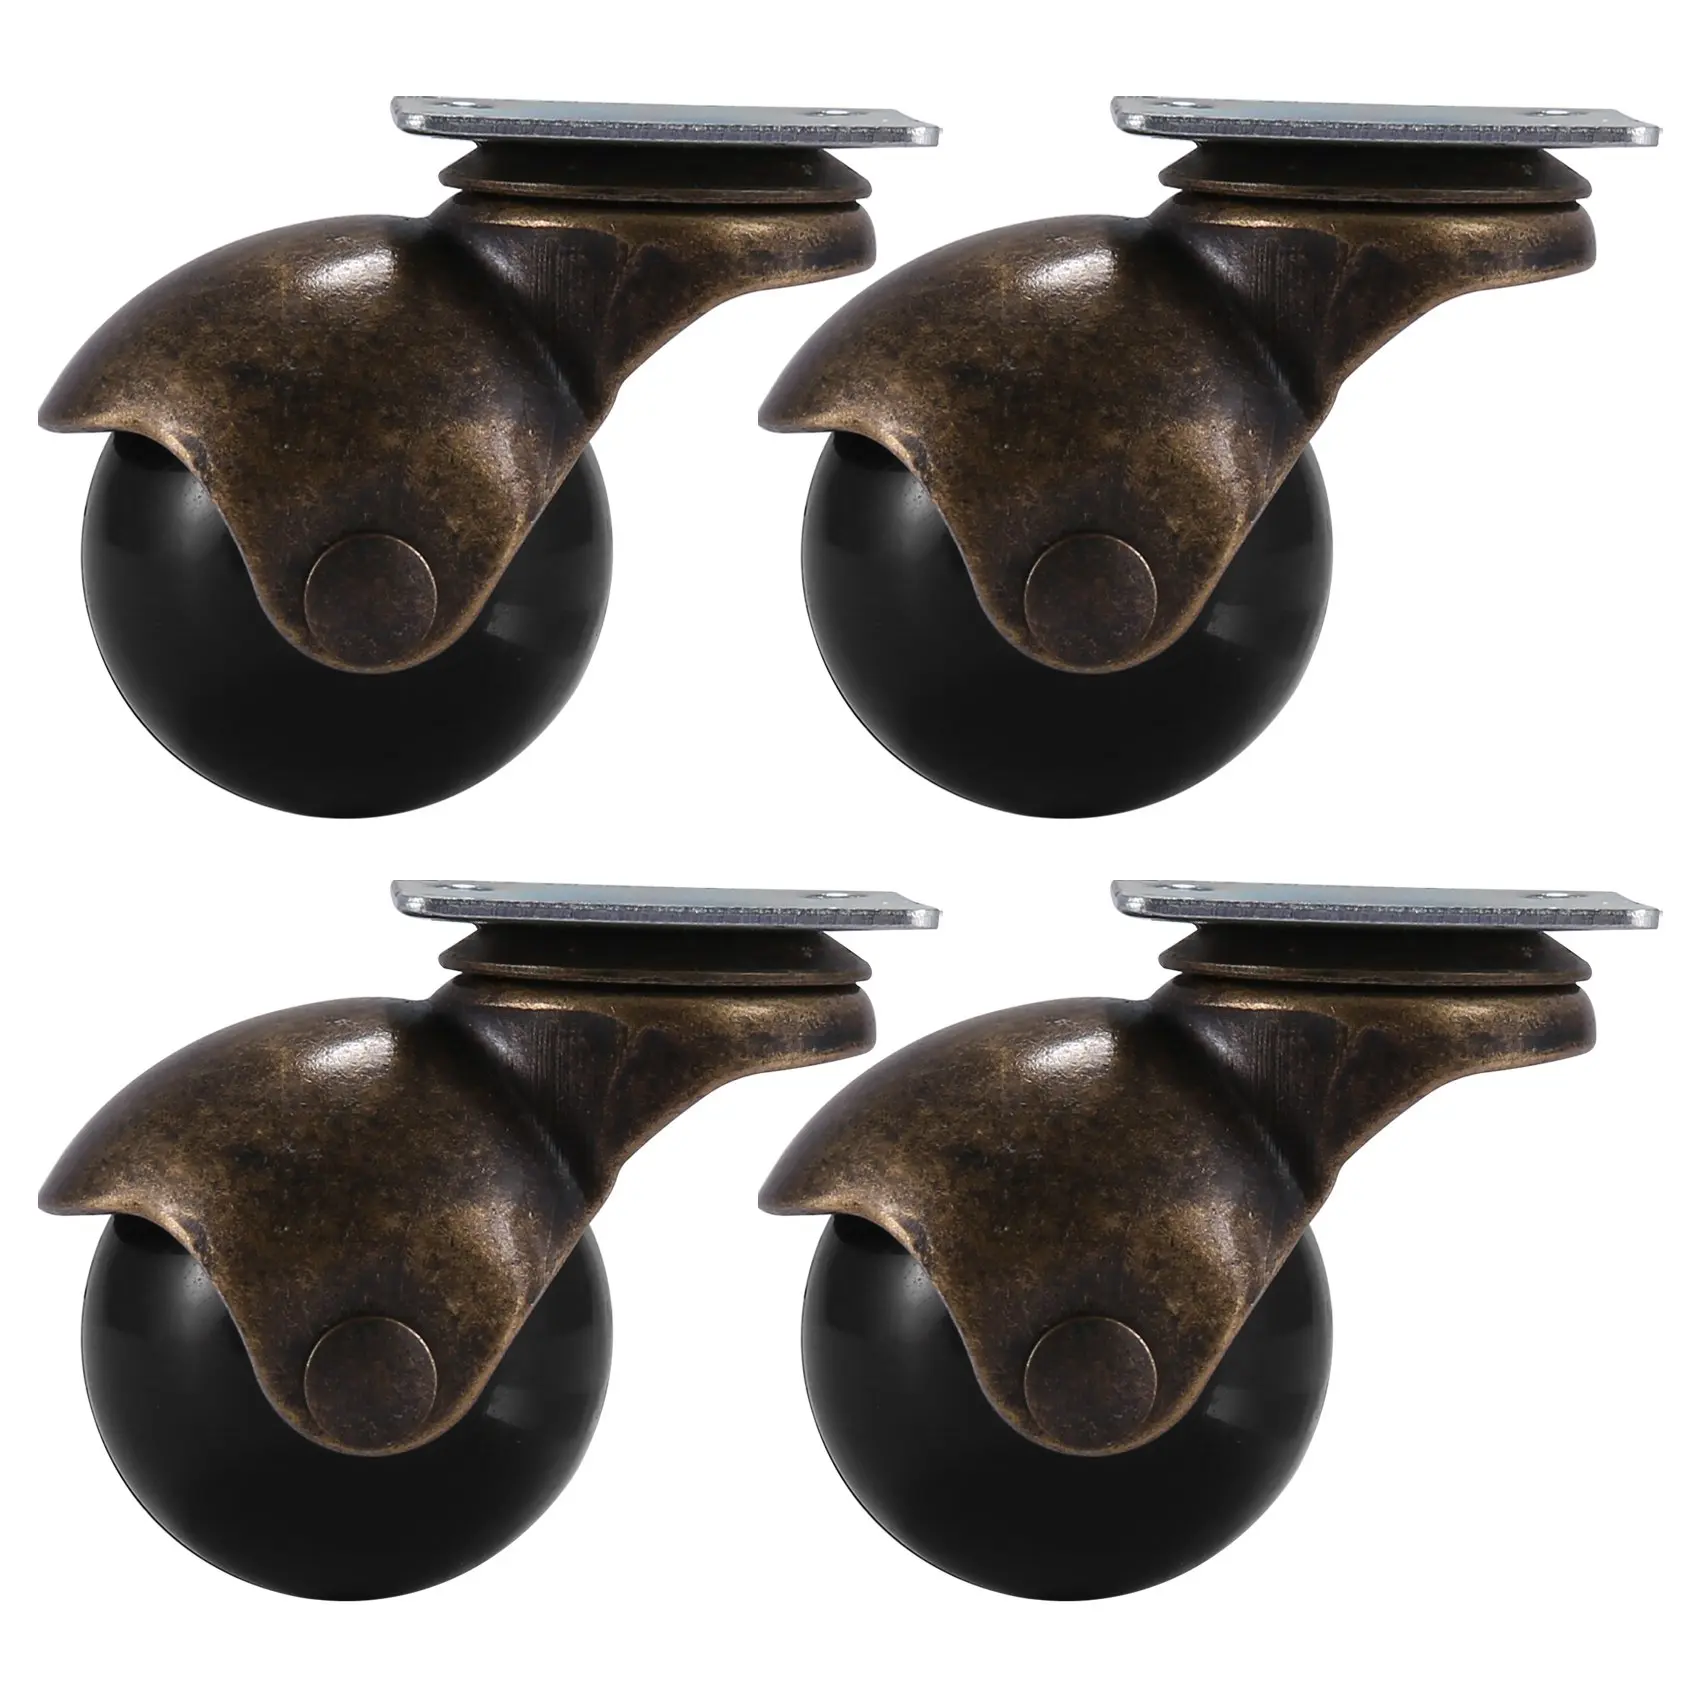 

[В 4 упаковках] Магнитные колесики с капюшоном, античная бронза (1,5 дюйма без тормоза)